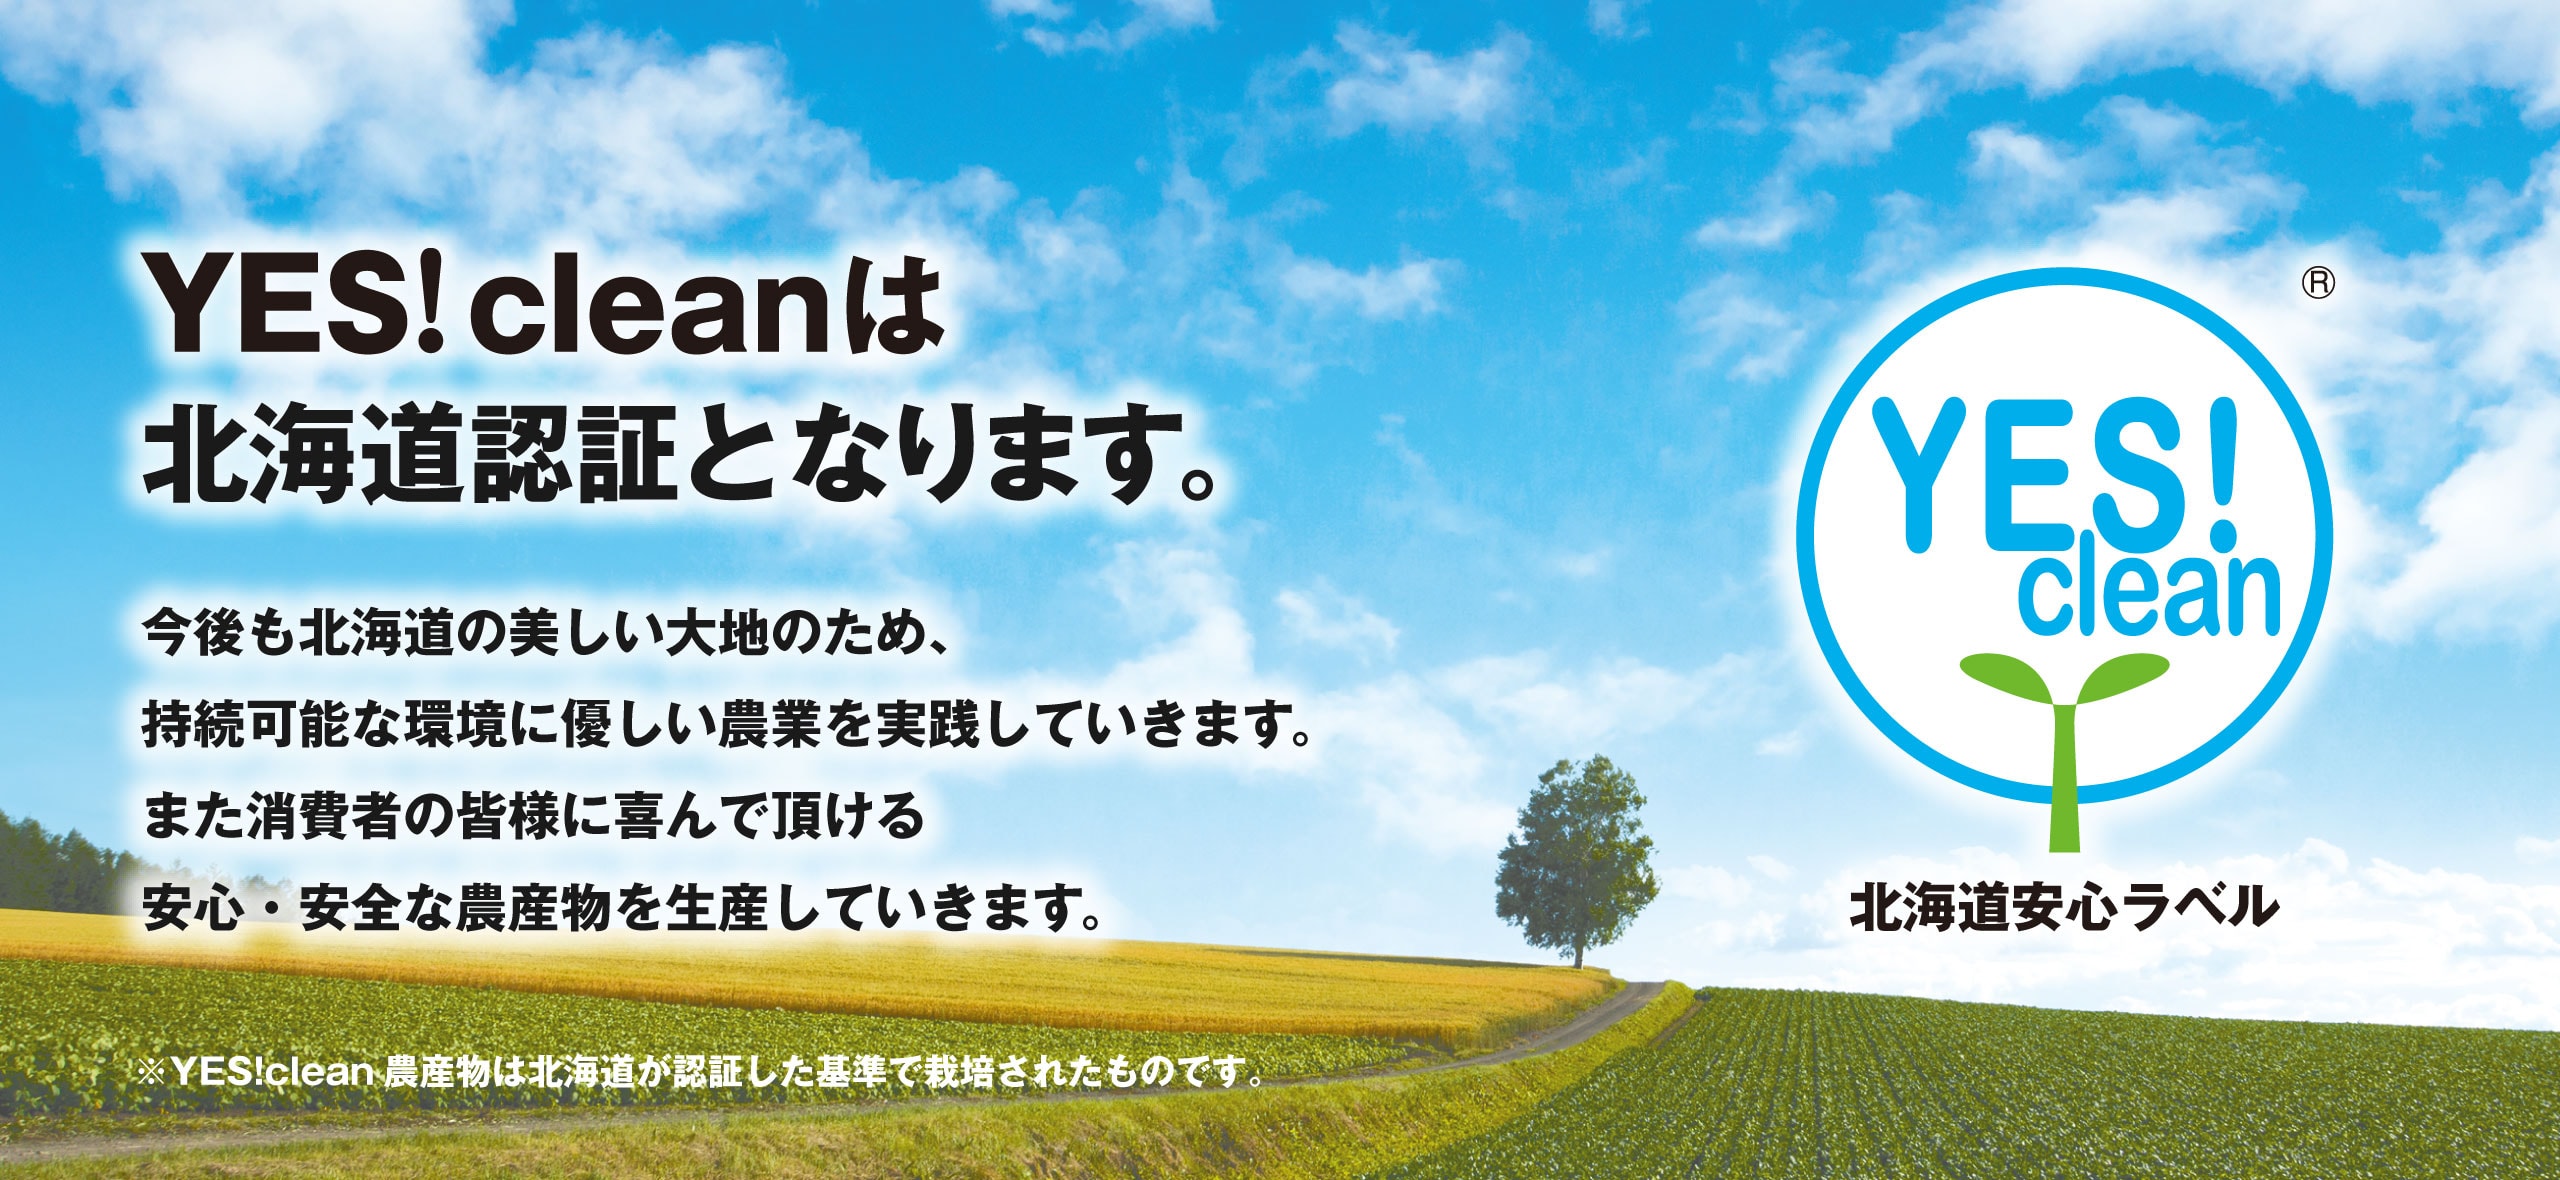 YES!cleanは北海道認証となります。今後も北海道の美しい大地のため、持続可能な環境に優しい農業を実践していきます。また消費者の皆様に喜んで頂ける安心・安全な農産物を生産していきます。